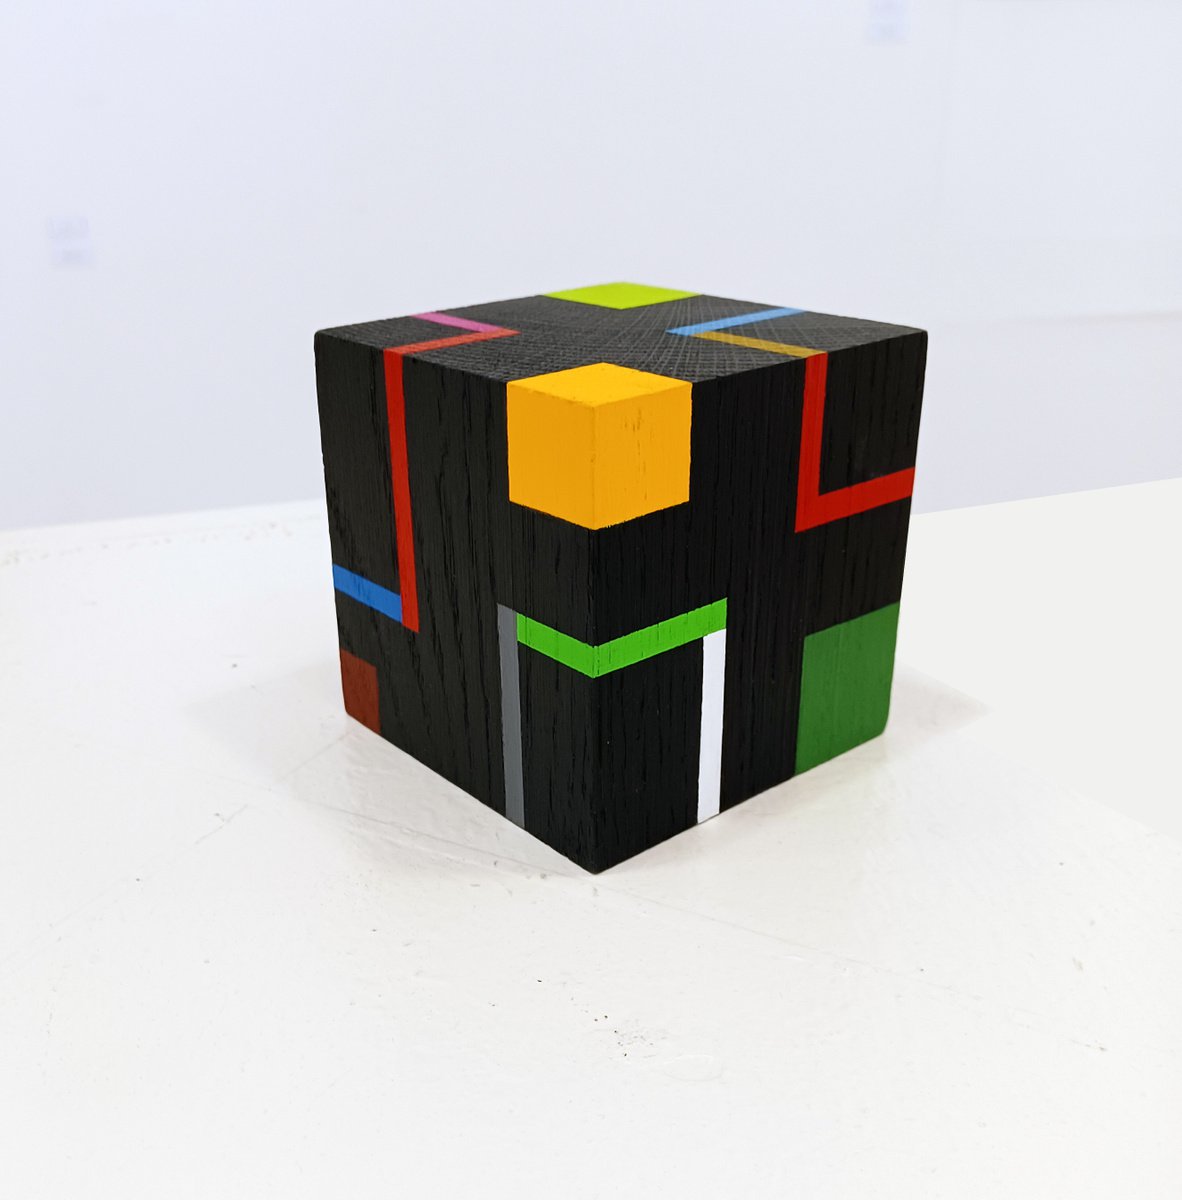 Cube f by Luis Medina